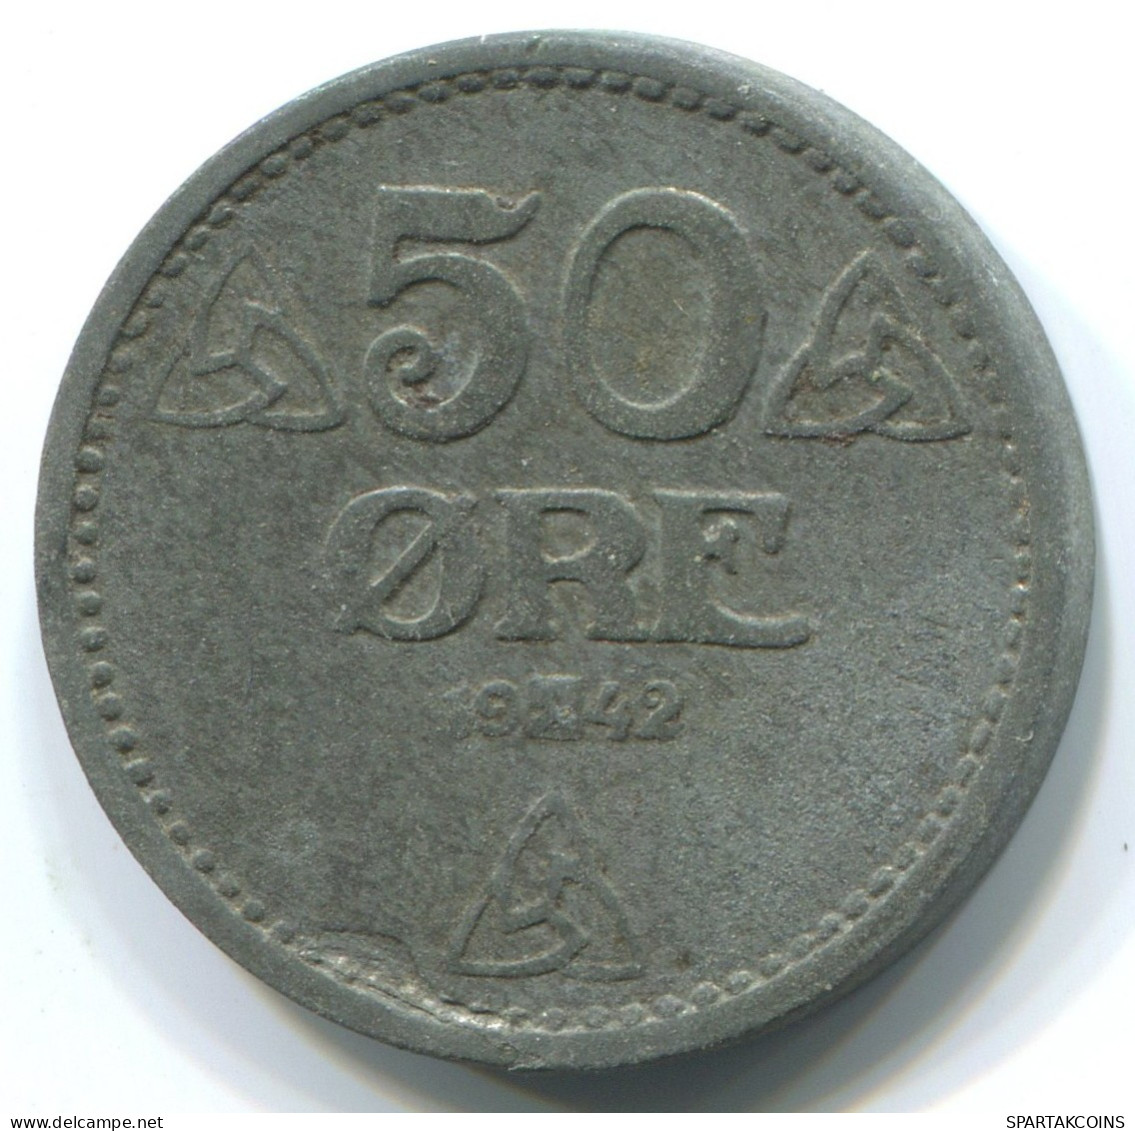 50 ORE 1942NORUEGA NORWAY Moneda #WW1037.E.A - Norvège